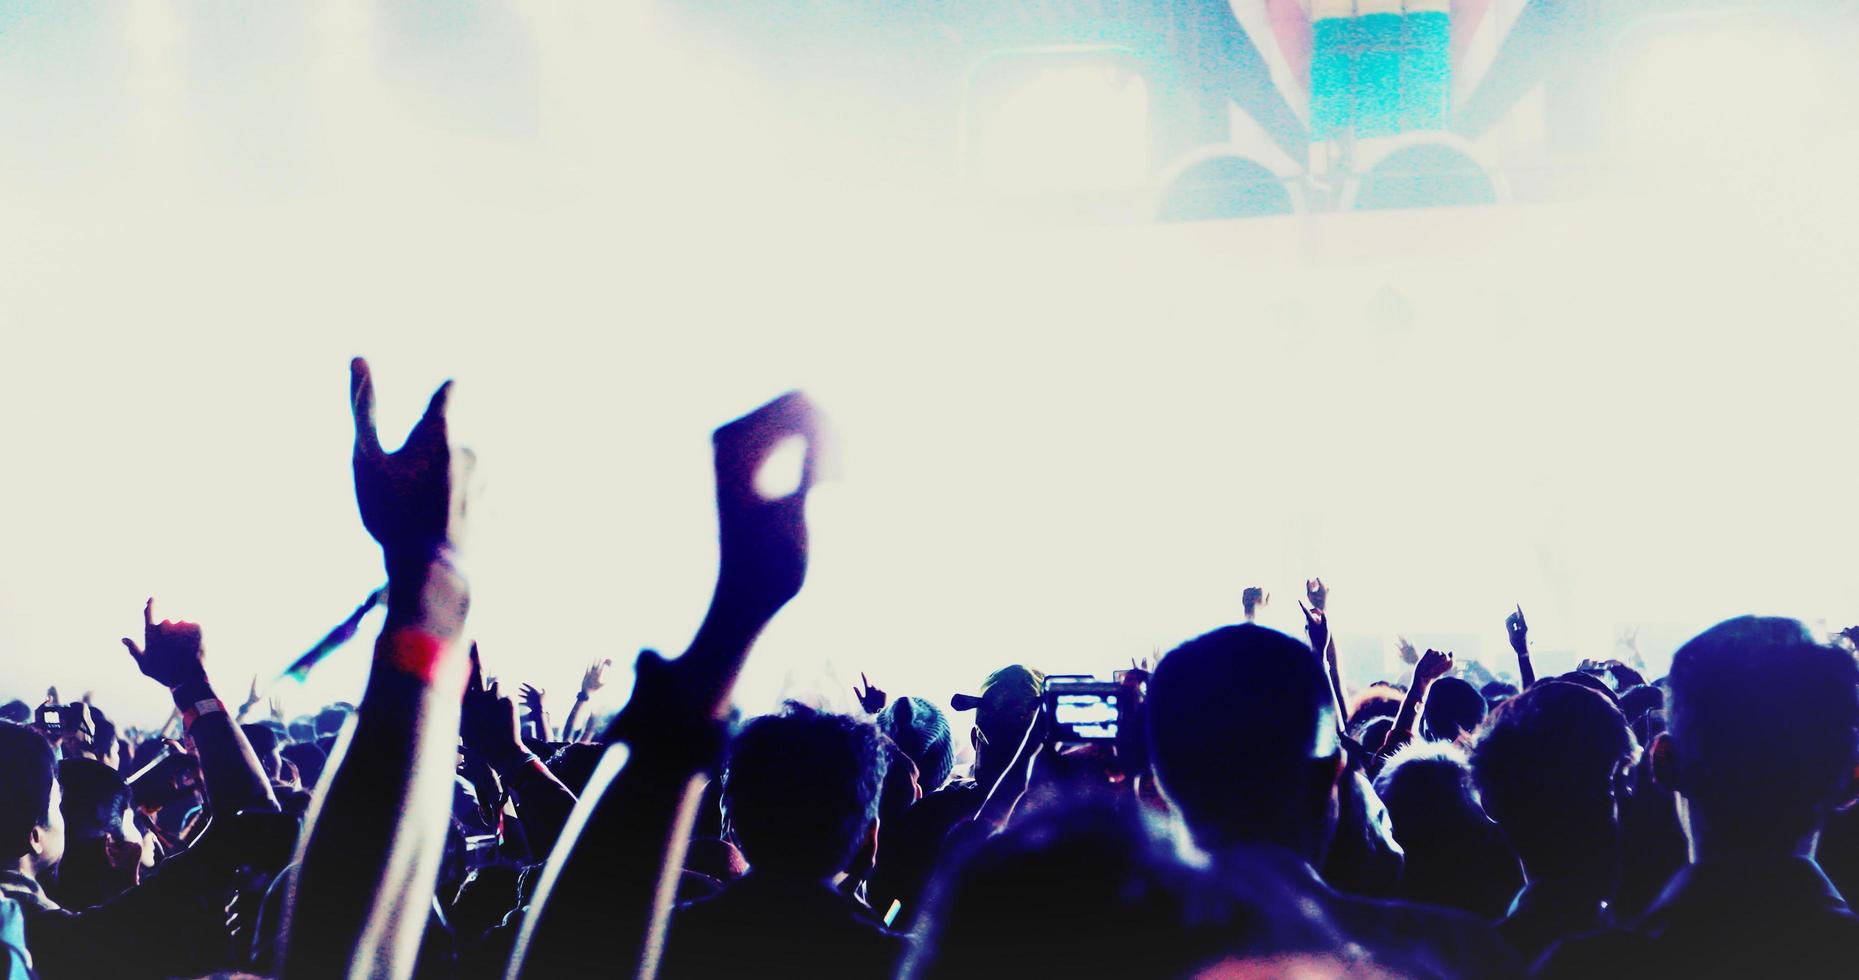 silhuetter av konsertpublik bakifrån av festivalpubliken som höjer händerna på starka scenljus foto